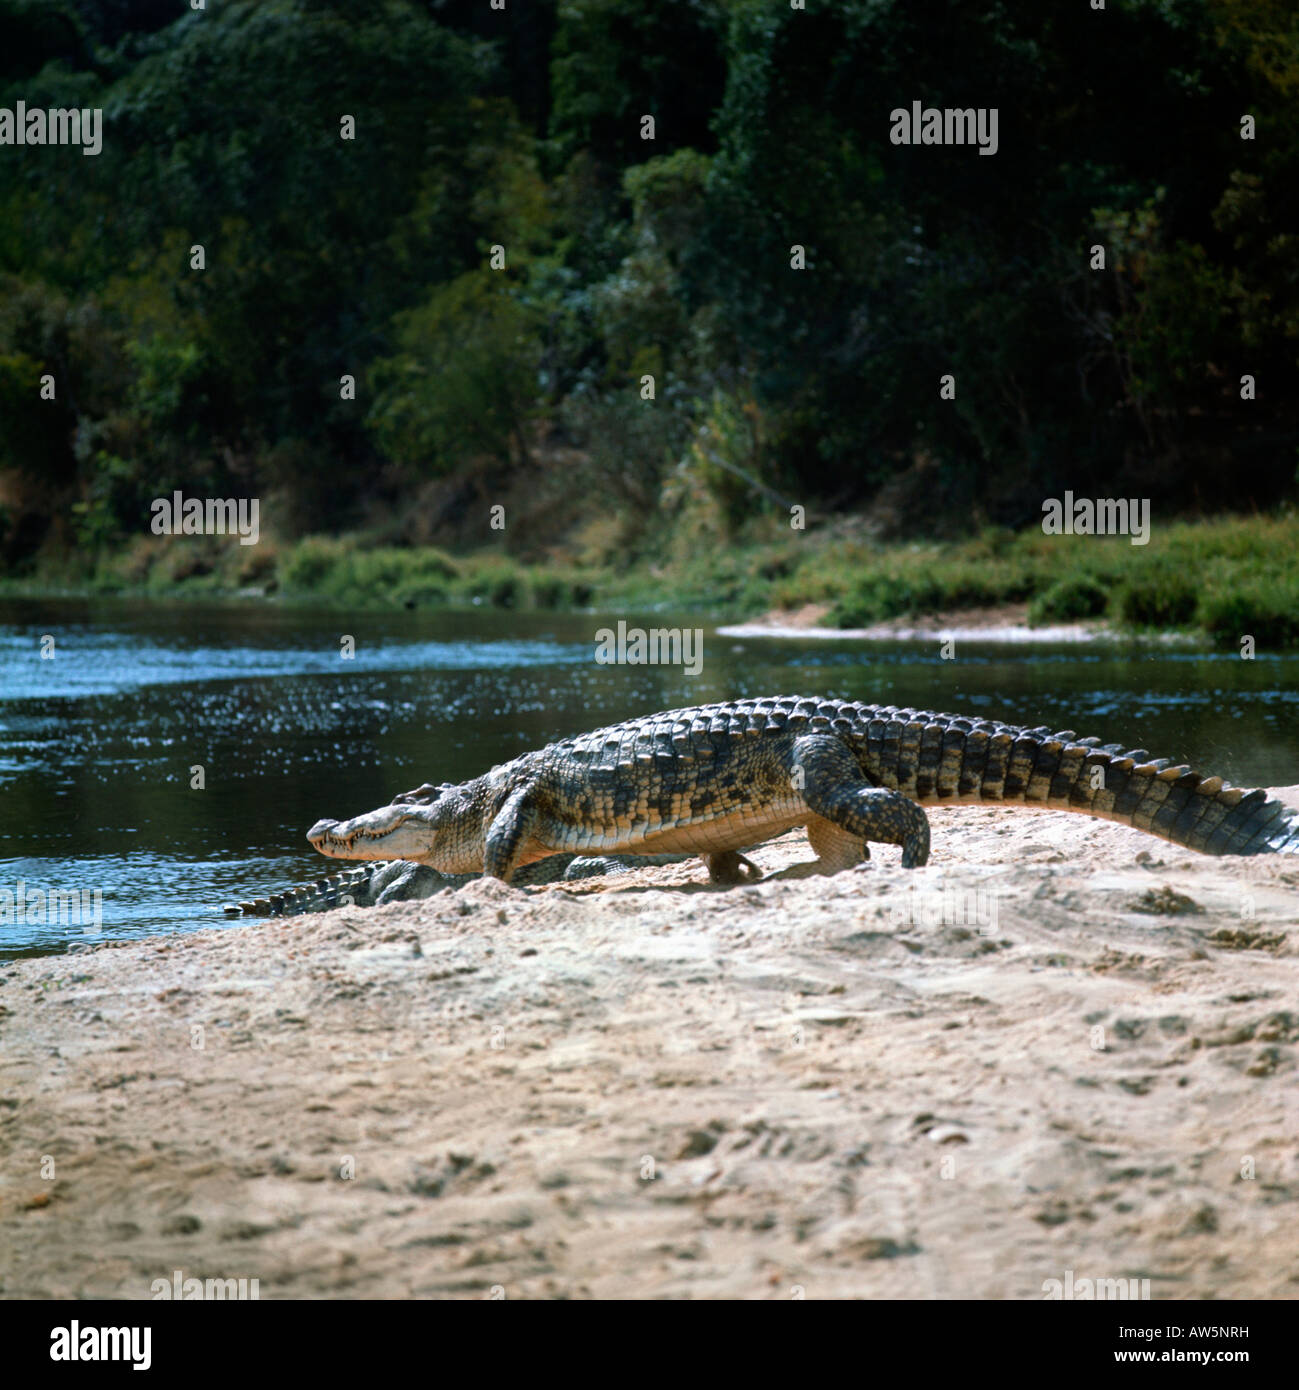 Coccodrillo del Nilo Crocodylus niloticus camminando sulla riva del fiume uganda Africa Afrika animali Bewegung coccodrilli Crocodili Foto Stock